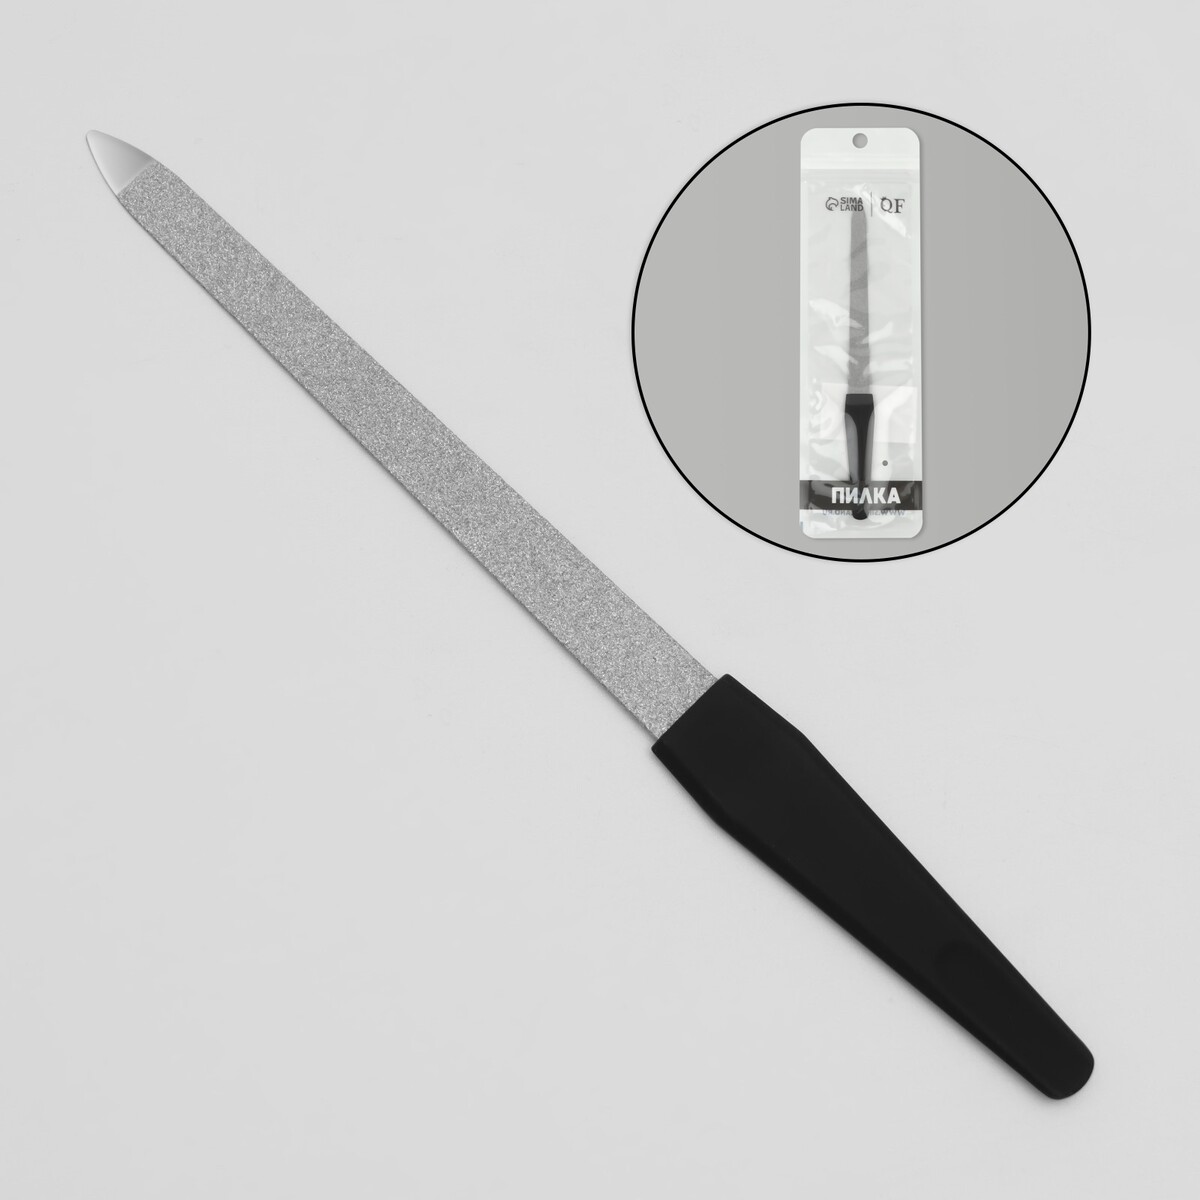 Пилка металлическая для ногтей, прорезиненная ручка, 17 см, цвет серебристый/черный пилка металлическая для ногтей 15 см в чехле